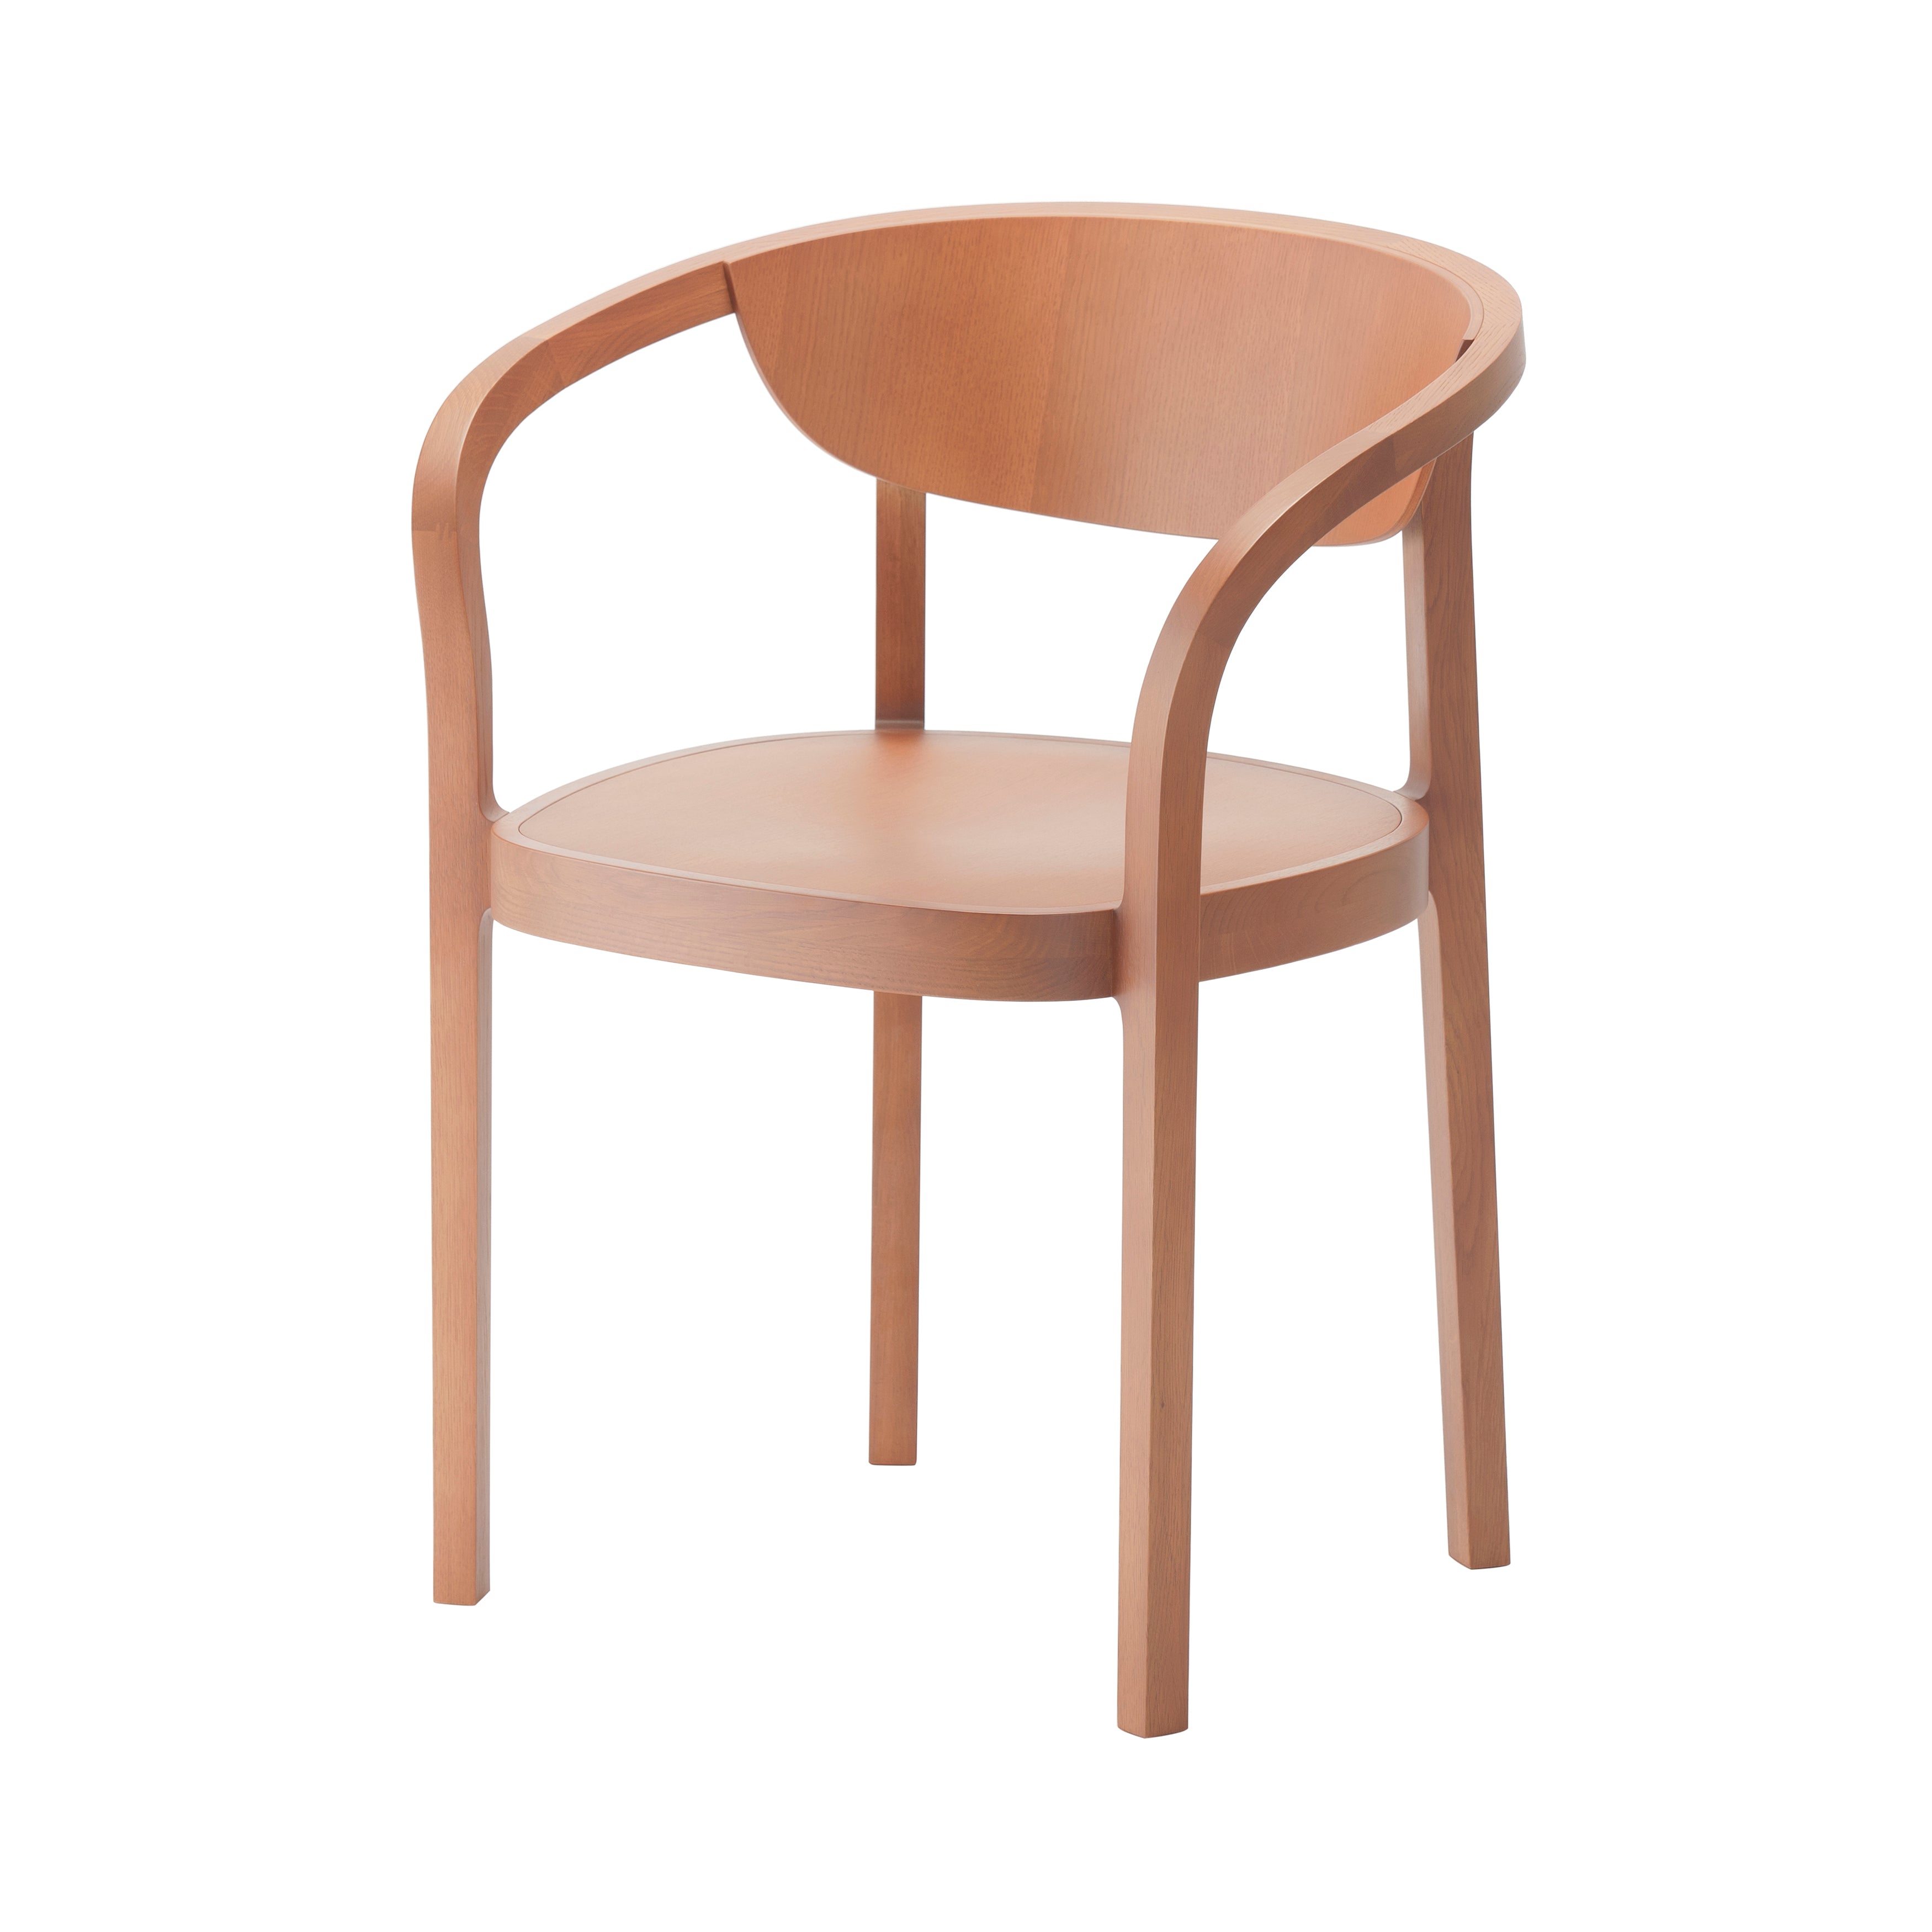 Chesa Chair: Terracotta